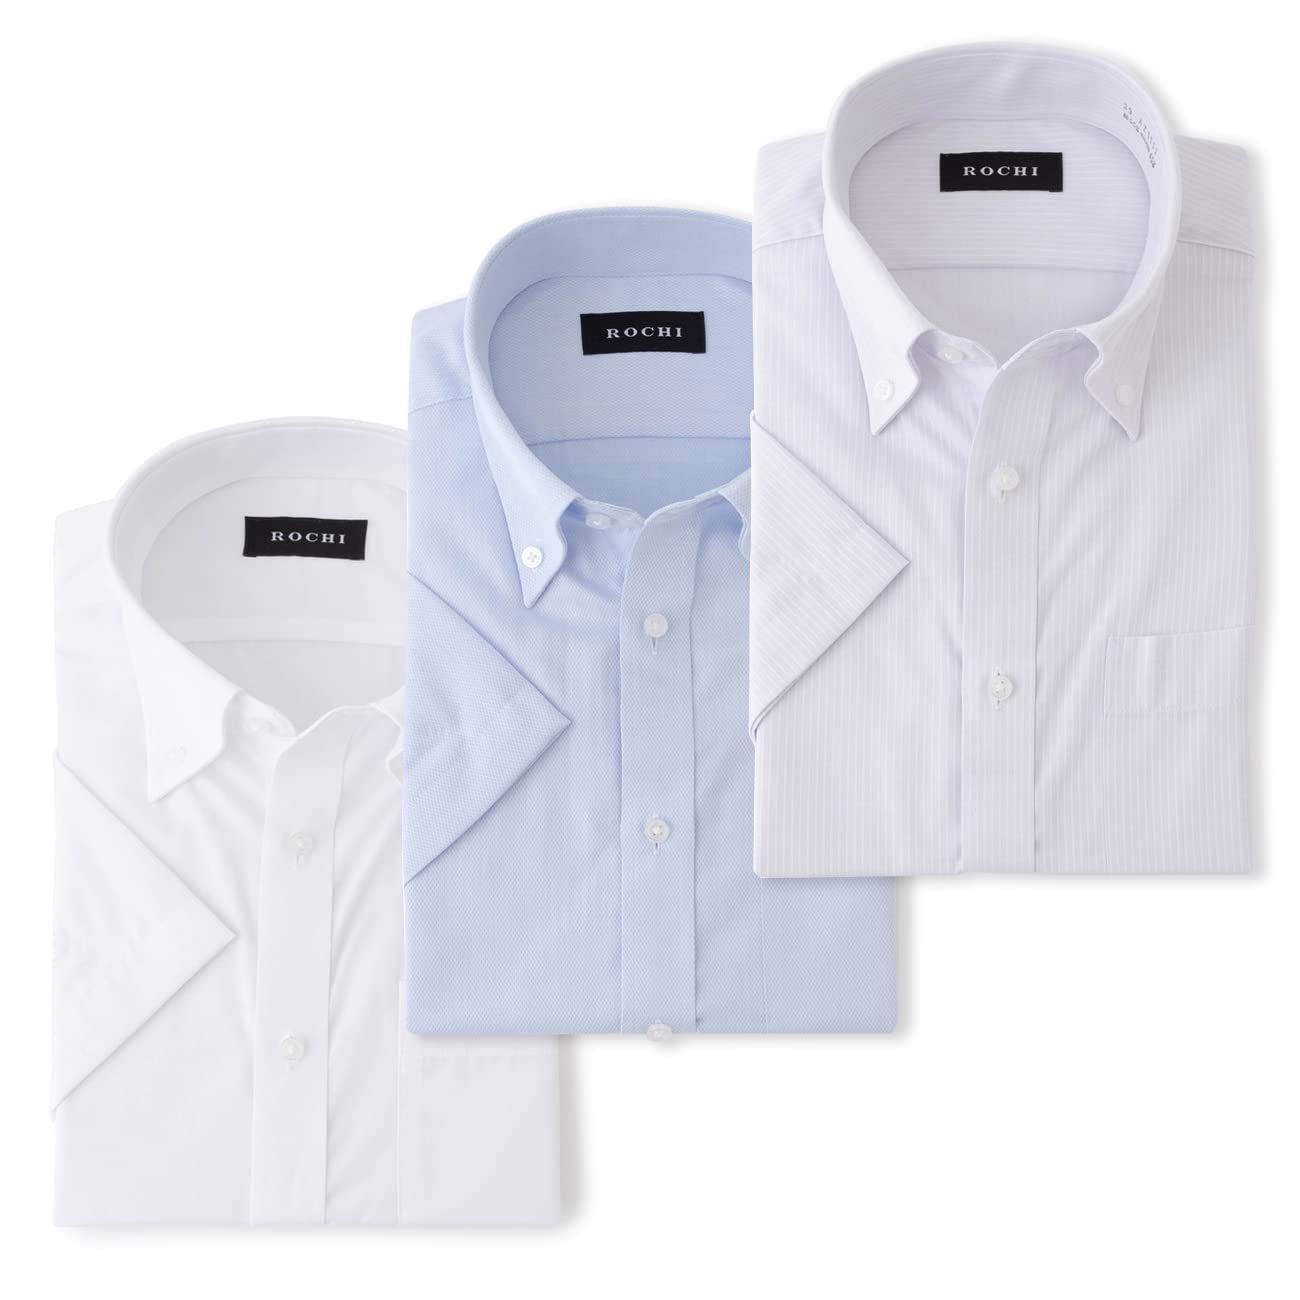 アオキ 半袖 シャツ3点セット 形態安定抗菌防臭加工綿高混率立体縫製ビジネス メンズ